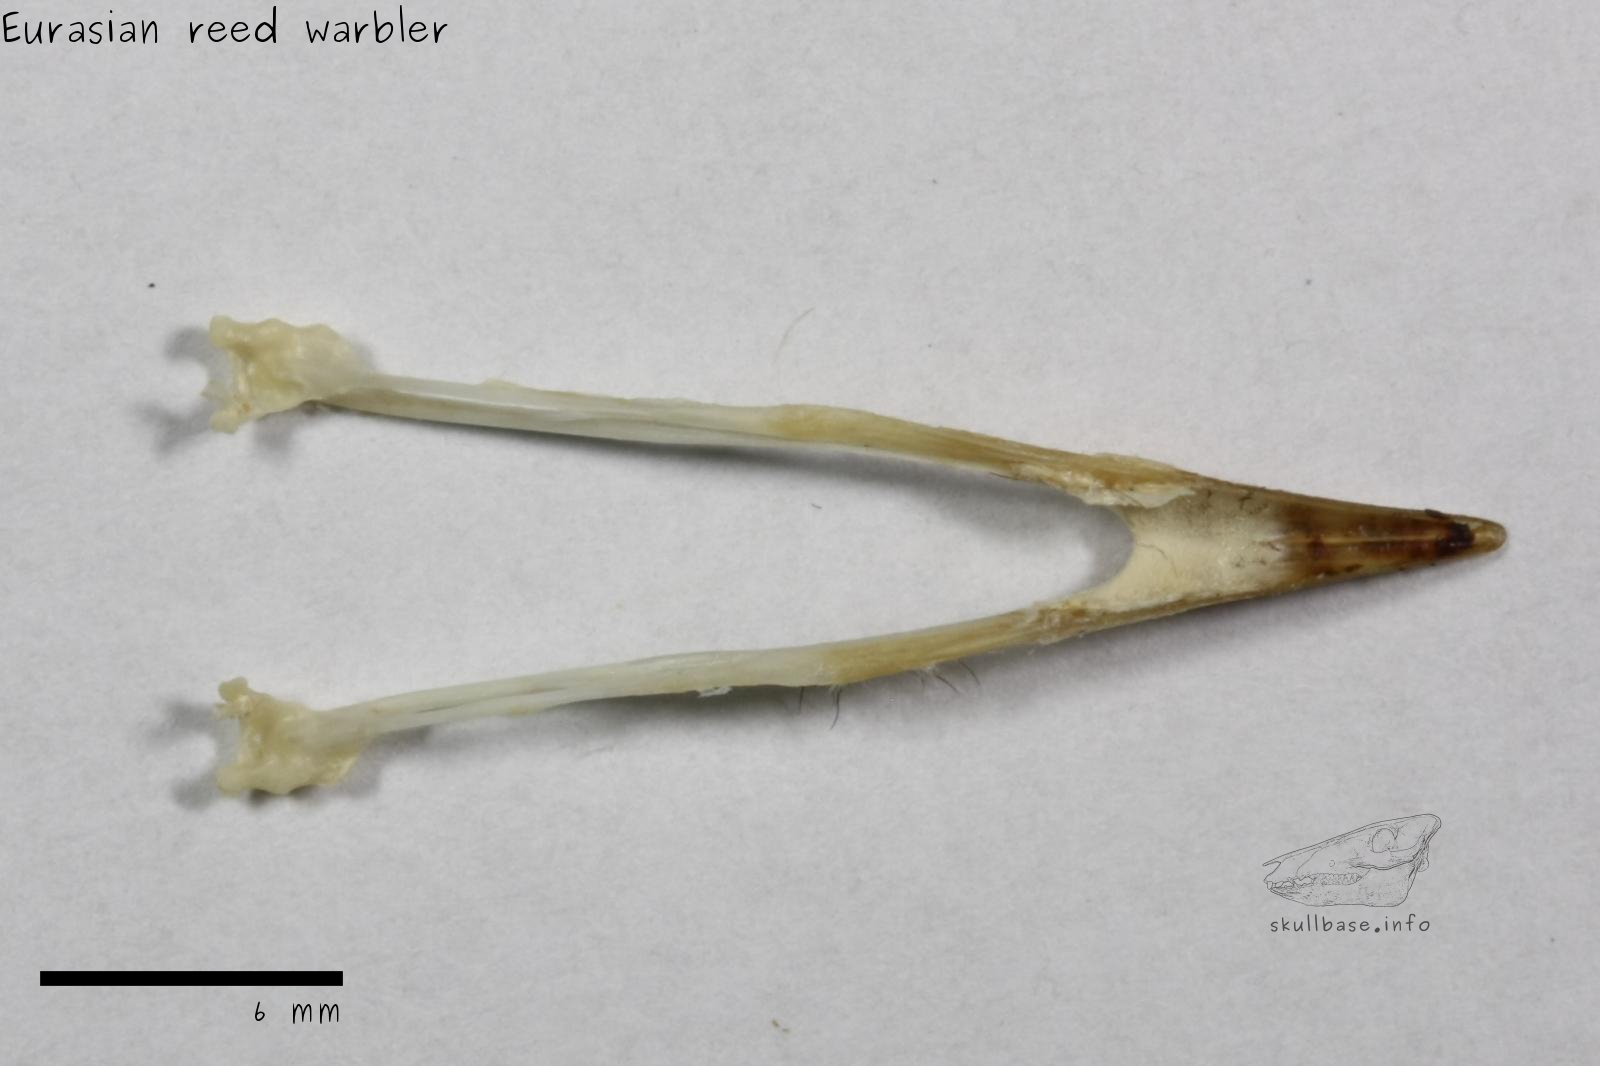 Eurasian reed warbler (Acrocephalus scirpaceus) jaw